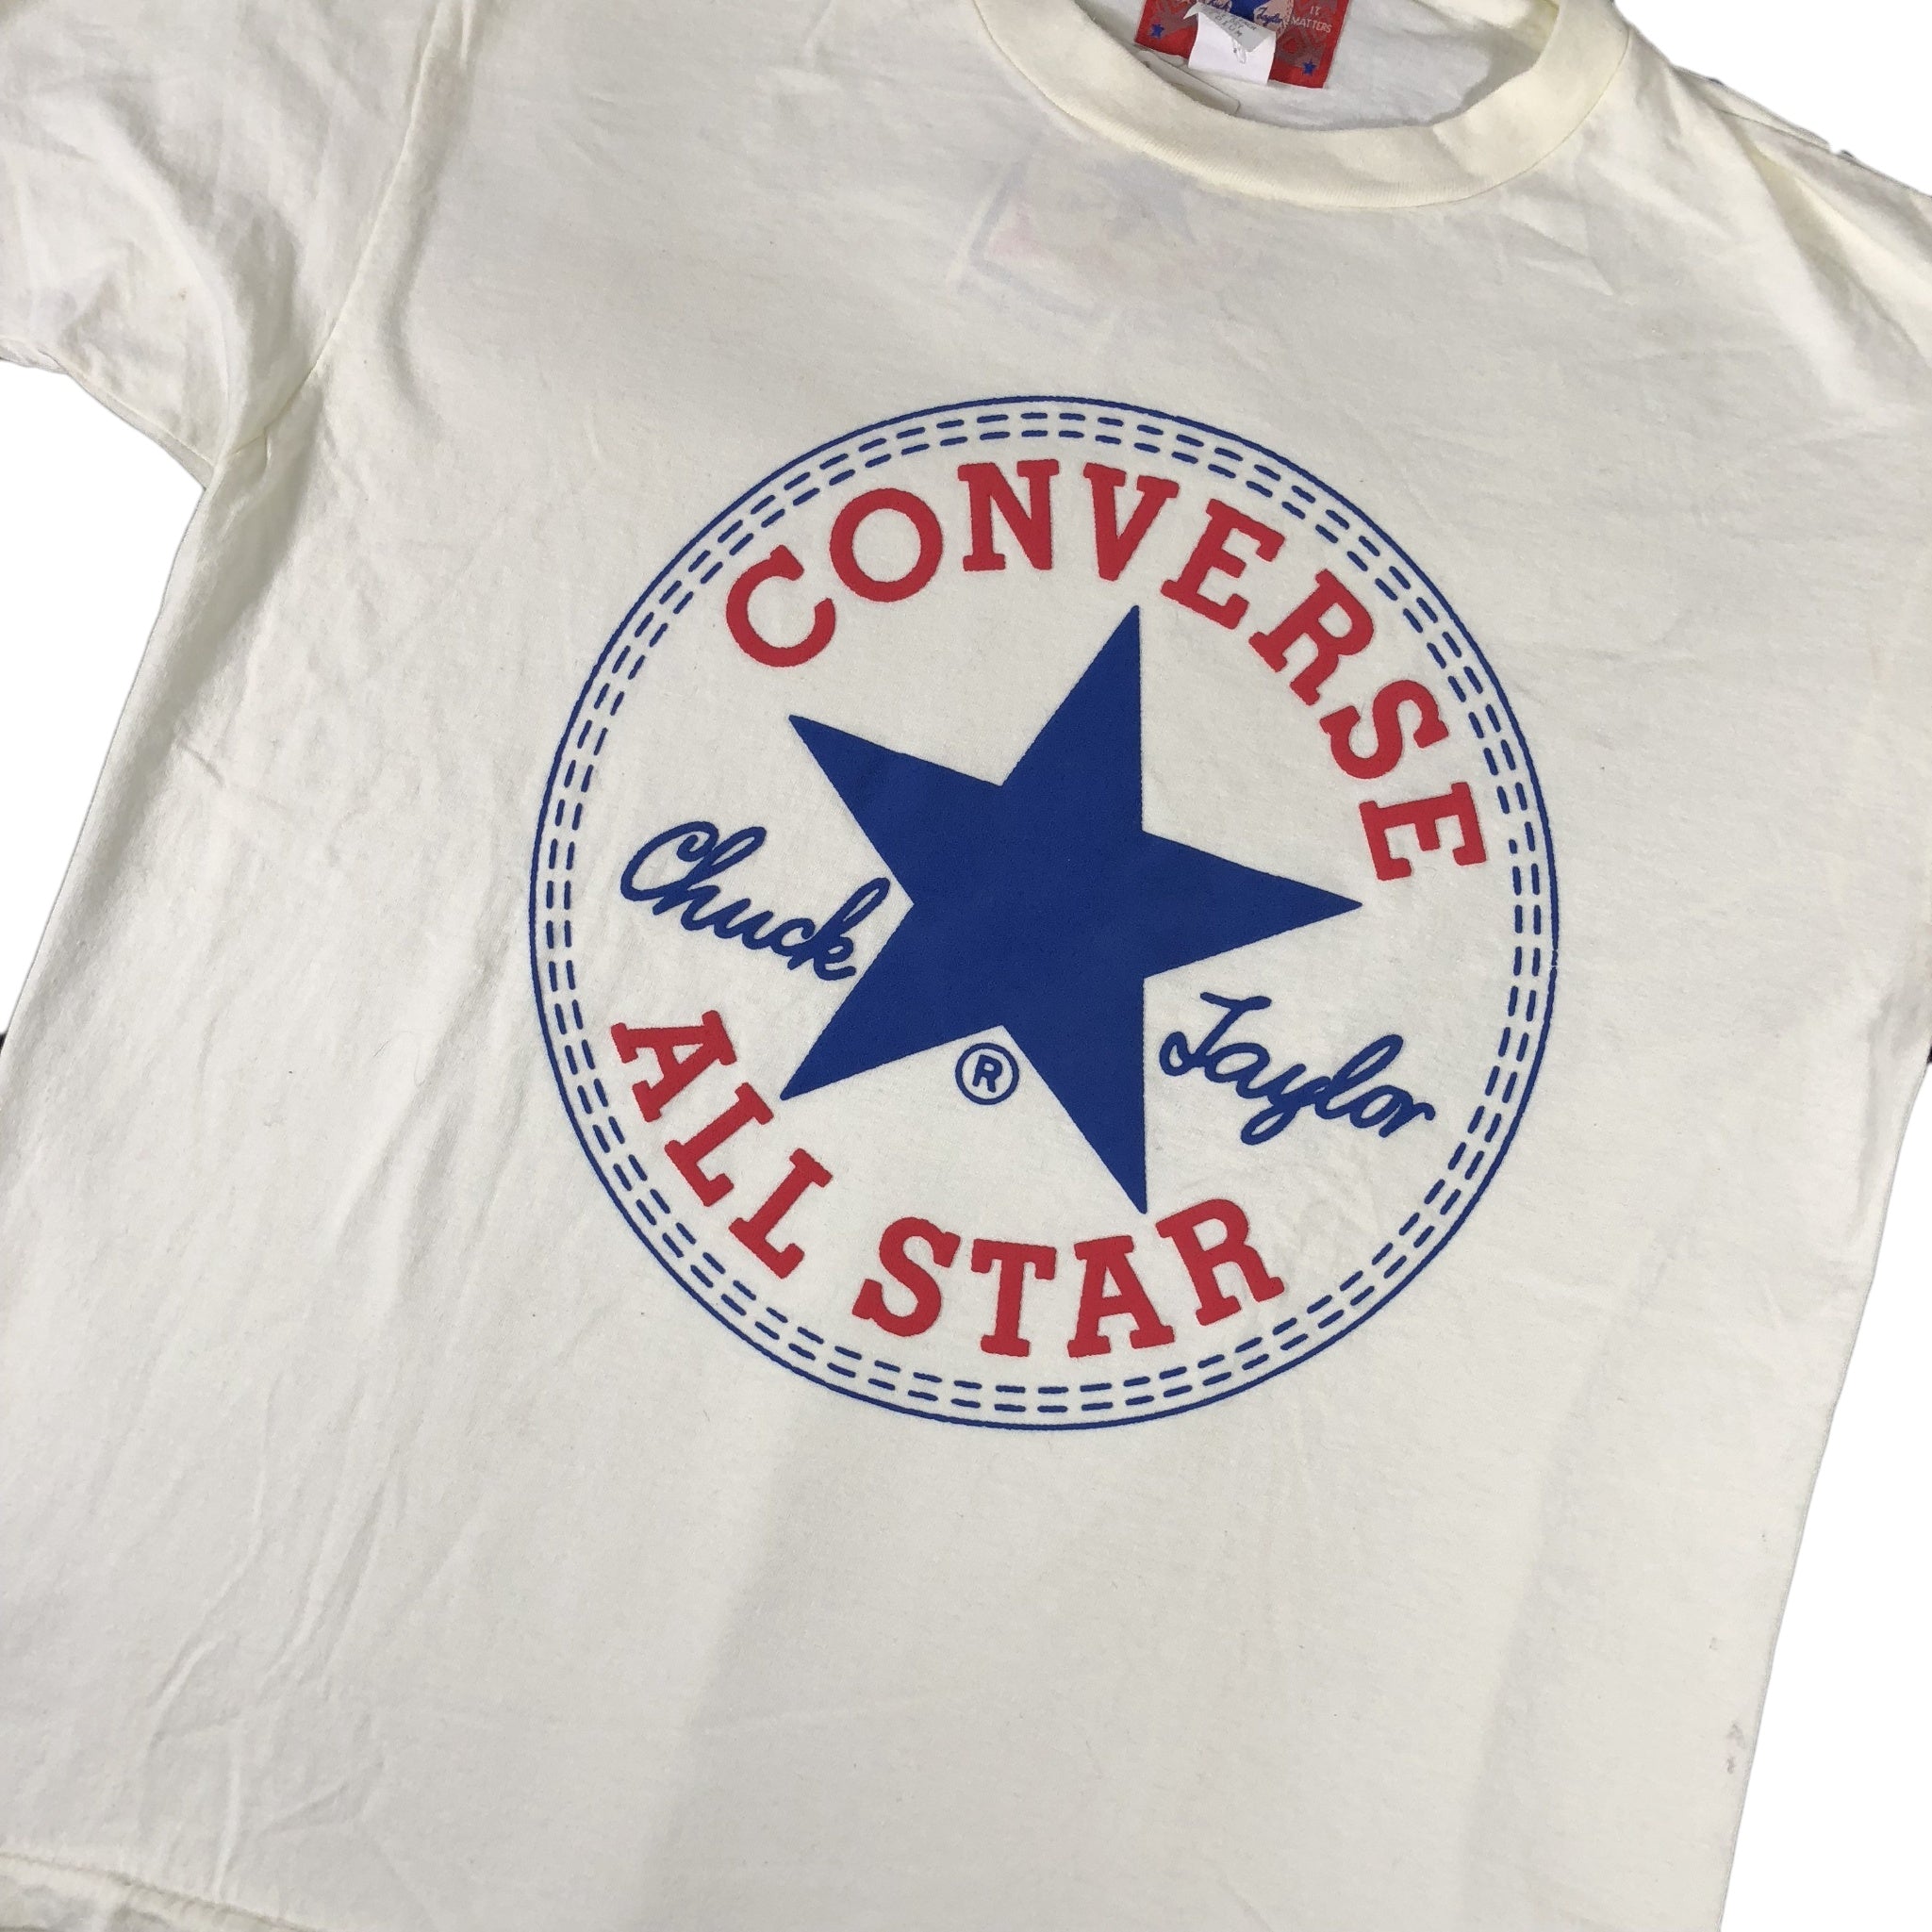 converse t shirt vintage